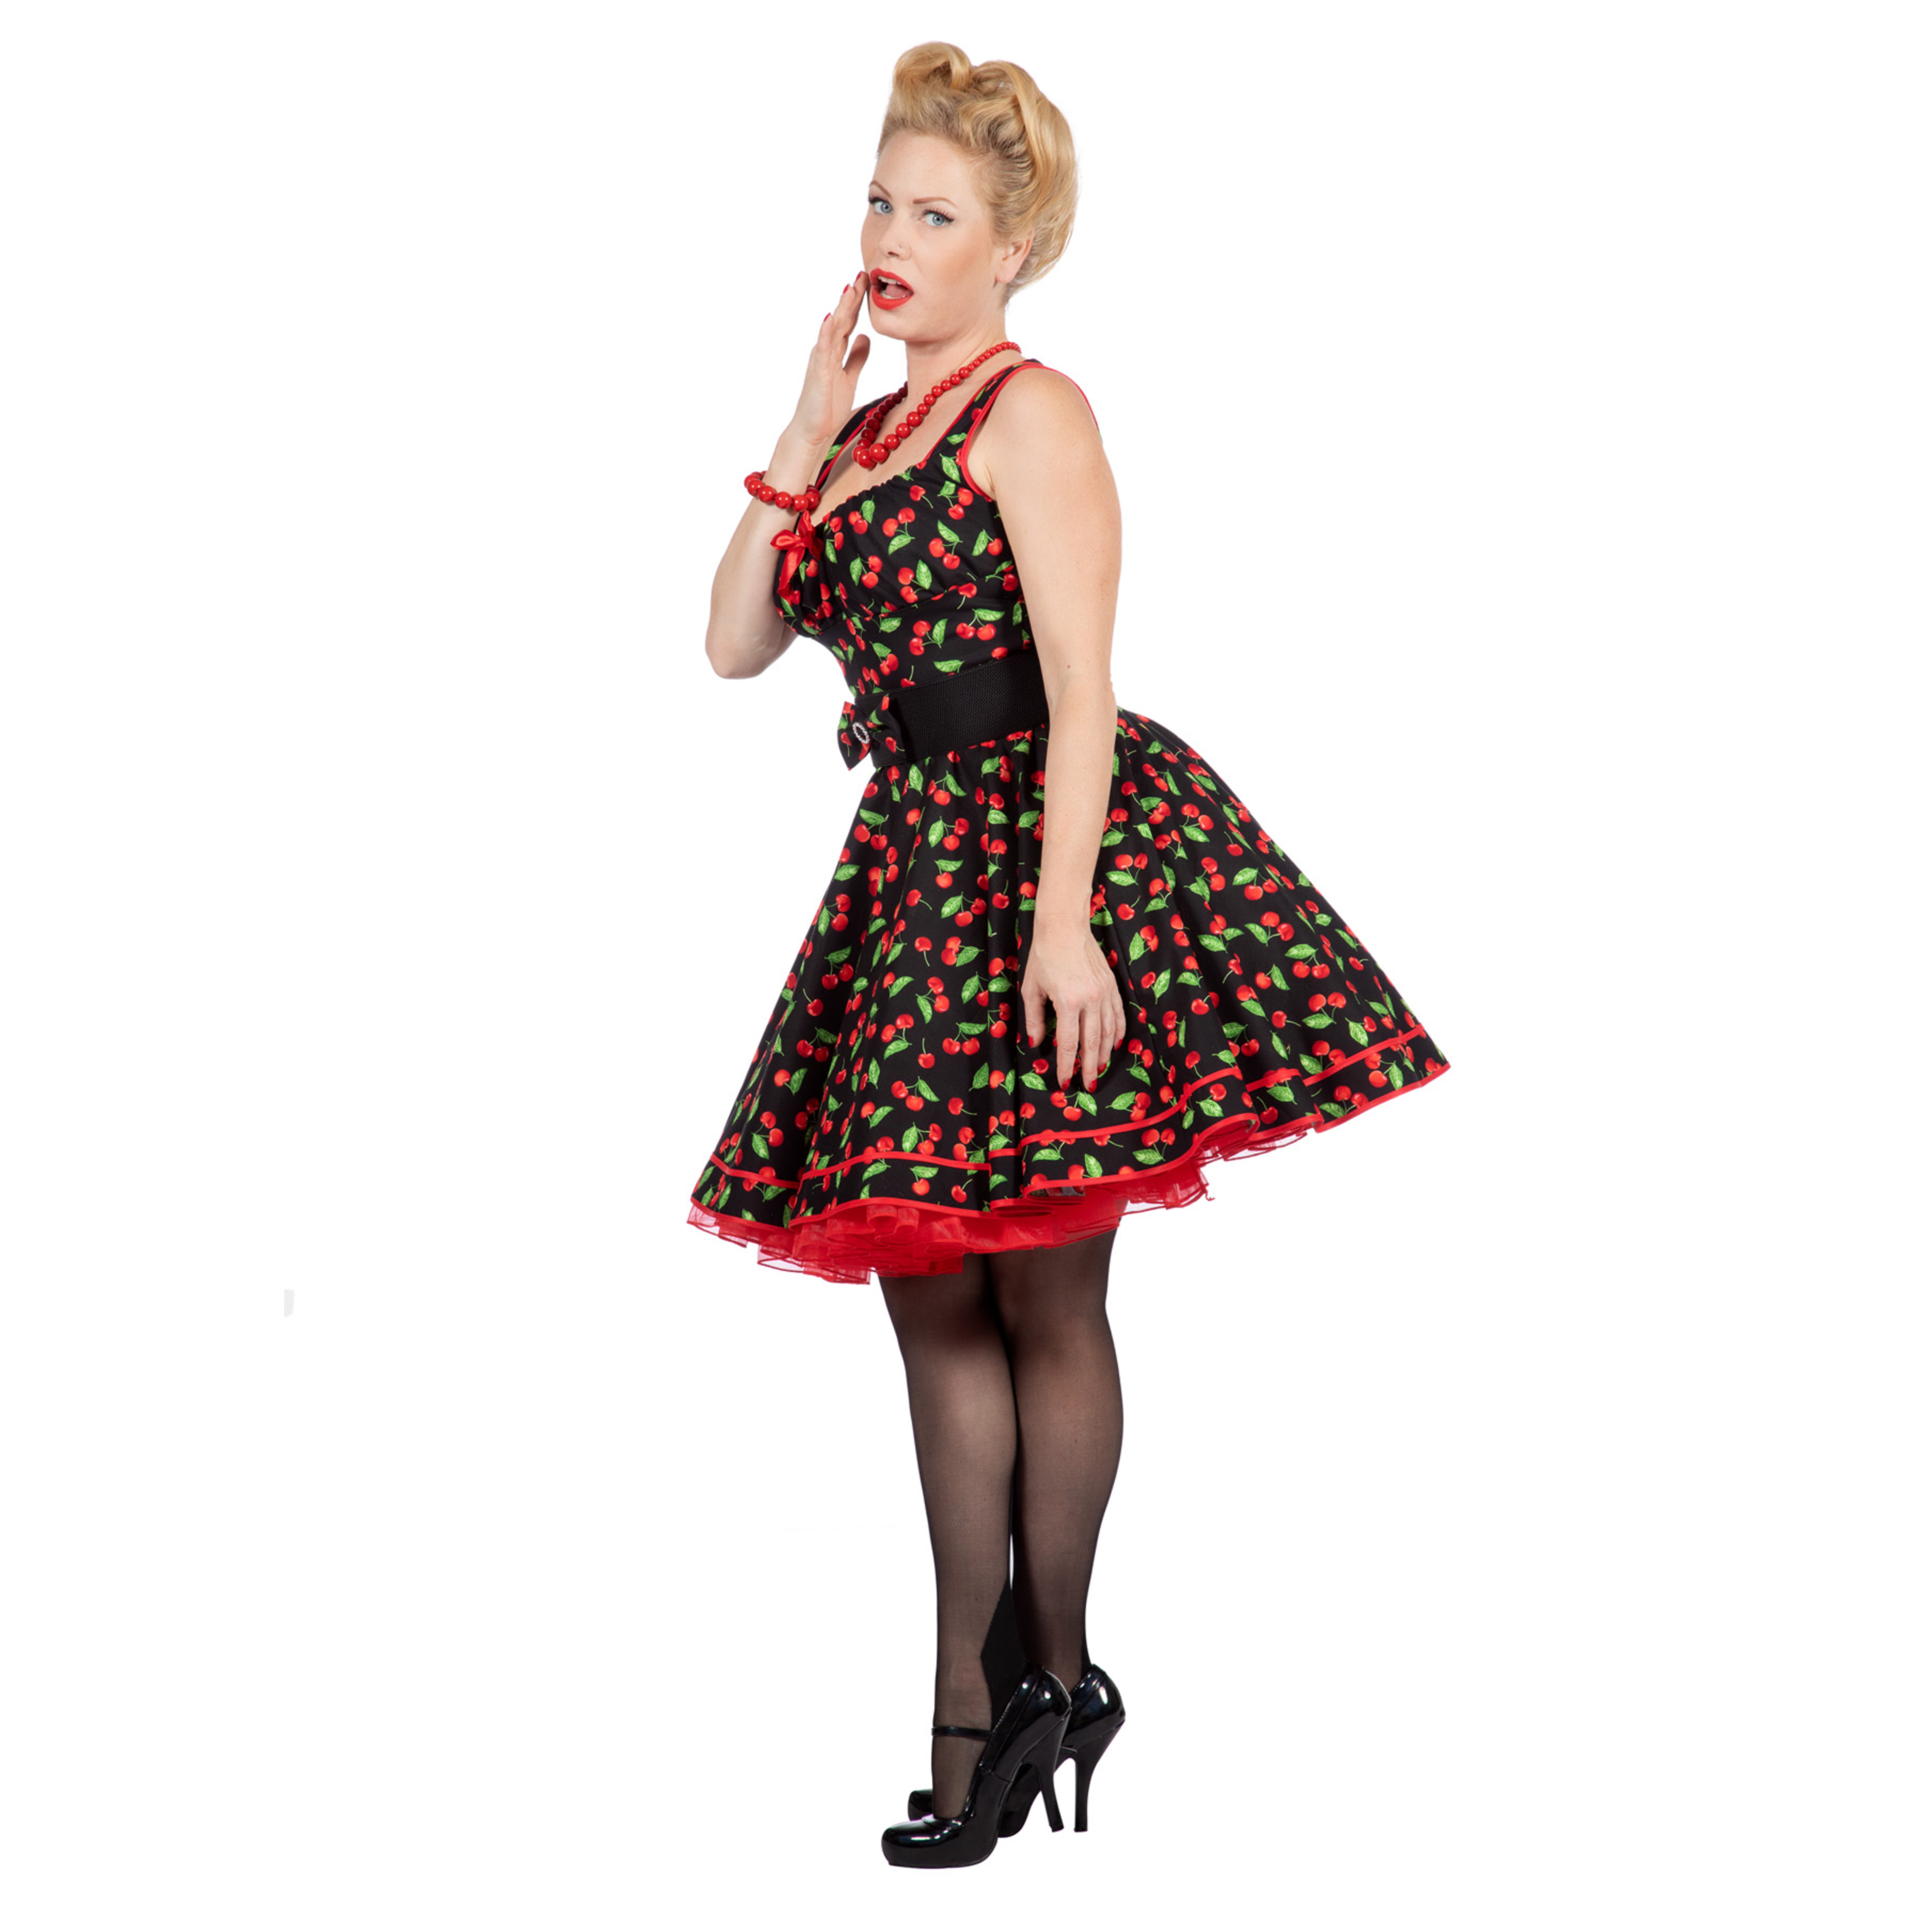 Premium-Line Damen-Kleid Rockabilly Cherry, Gr. 48 Bild 2